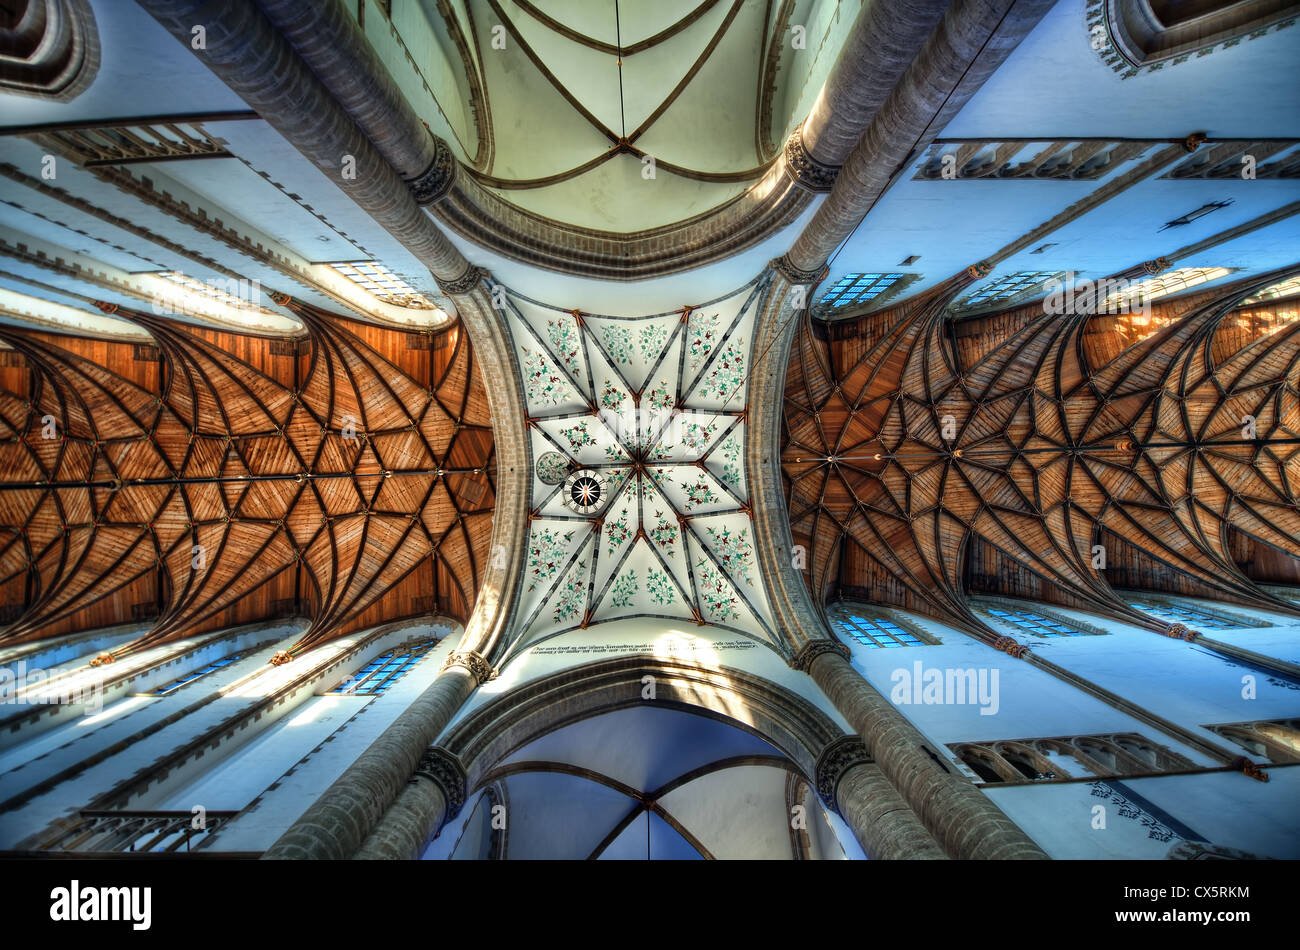 Le plafond orné de la cathédrale gothique de Saint Bavo à Haarlem, Pays-Bas. La cathédrale est également connu sous le nom de la Grote Kerk. Banque D'Images